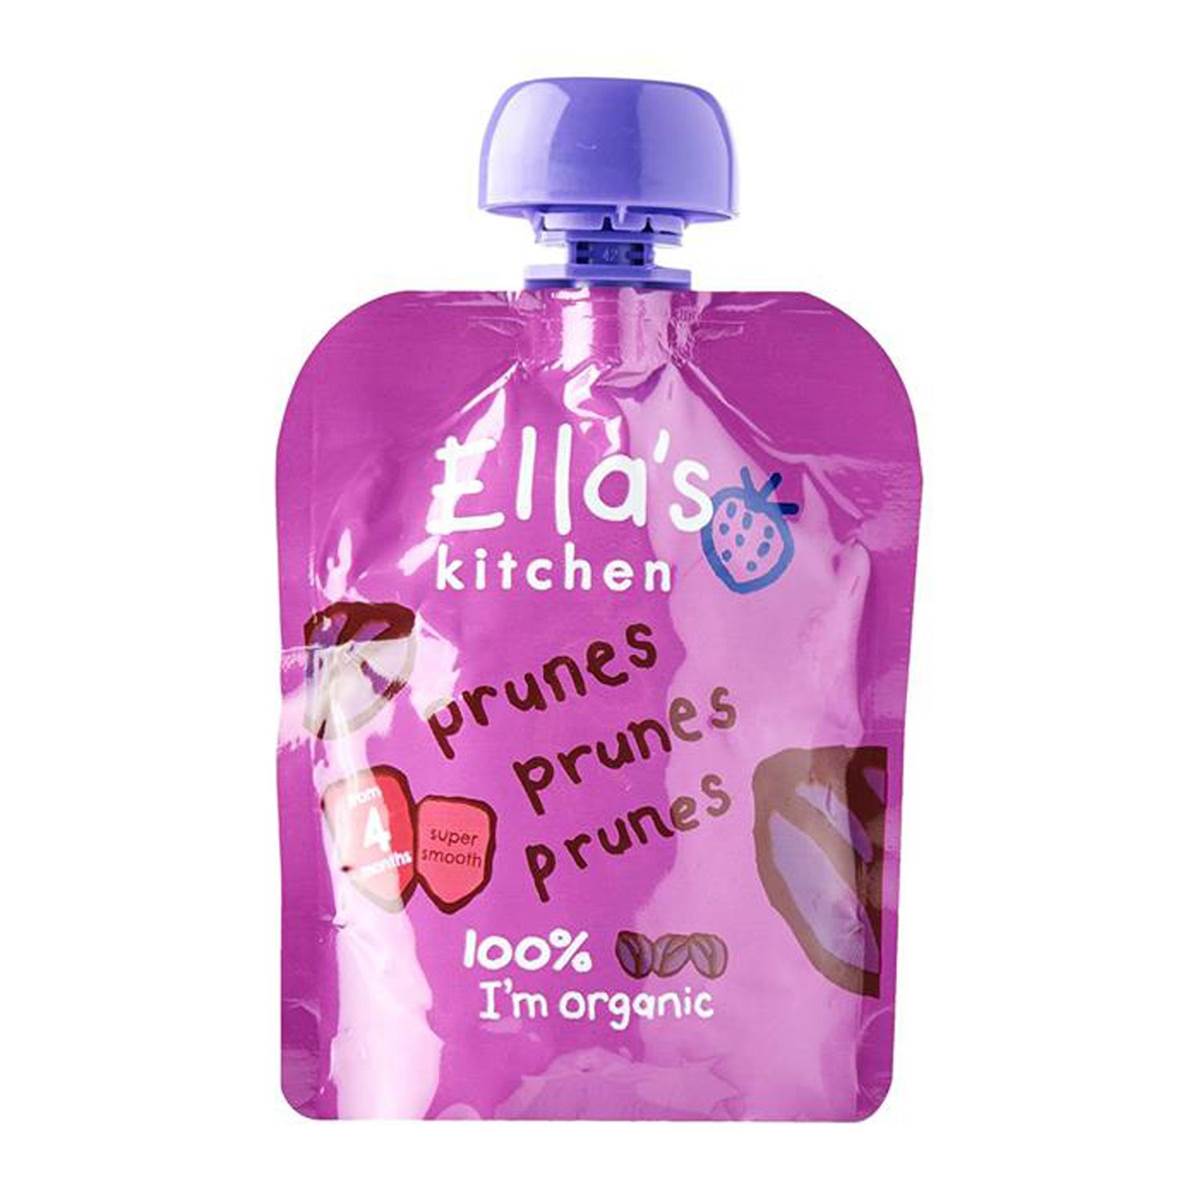 Ellas Kitchen Prunes Prunes Prunes - 70g